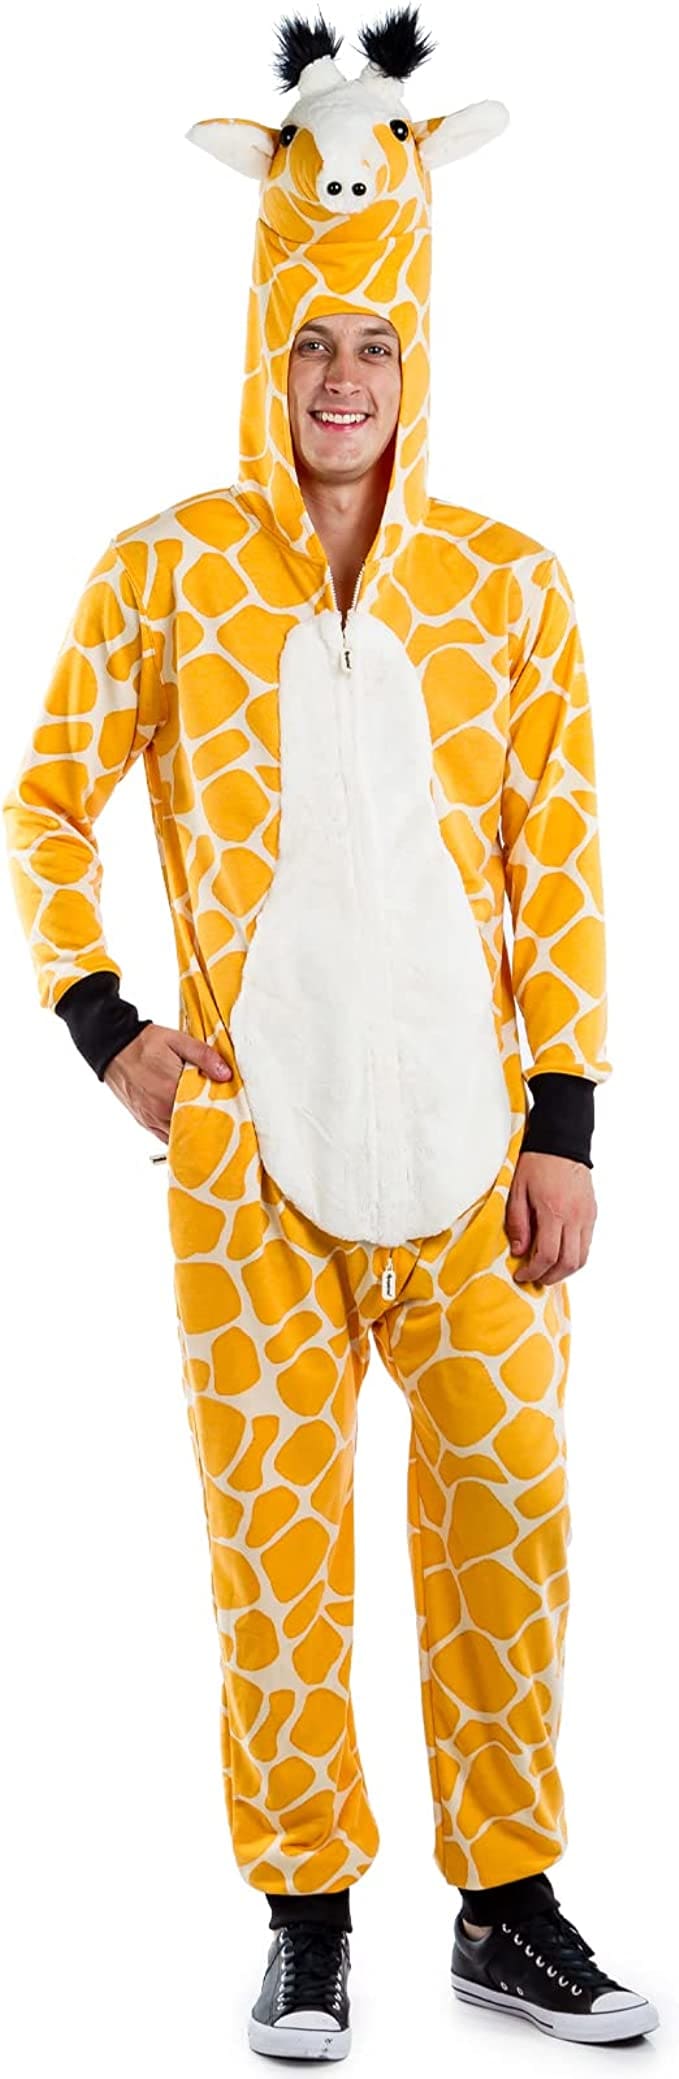 giraffe costume